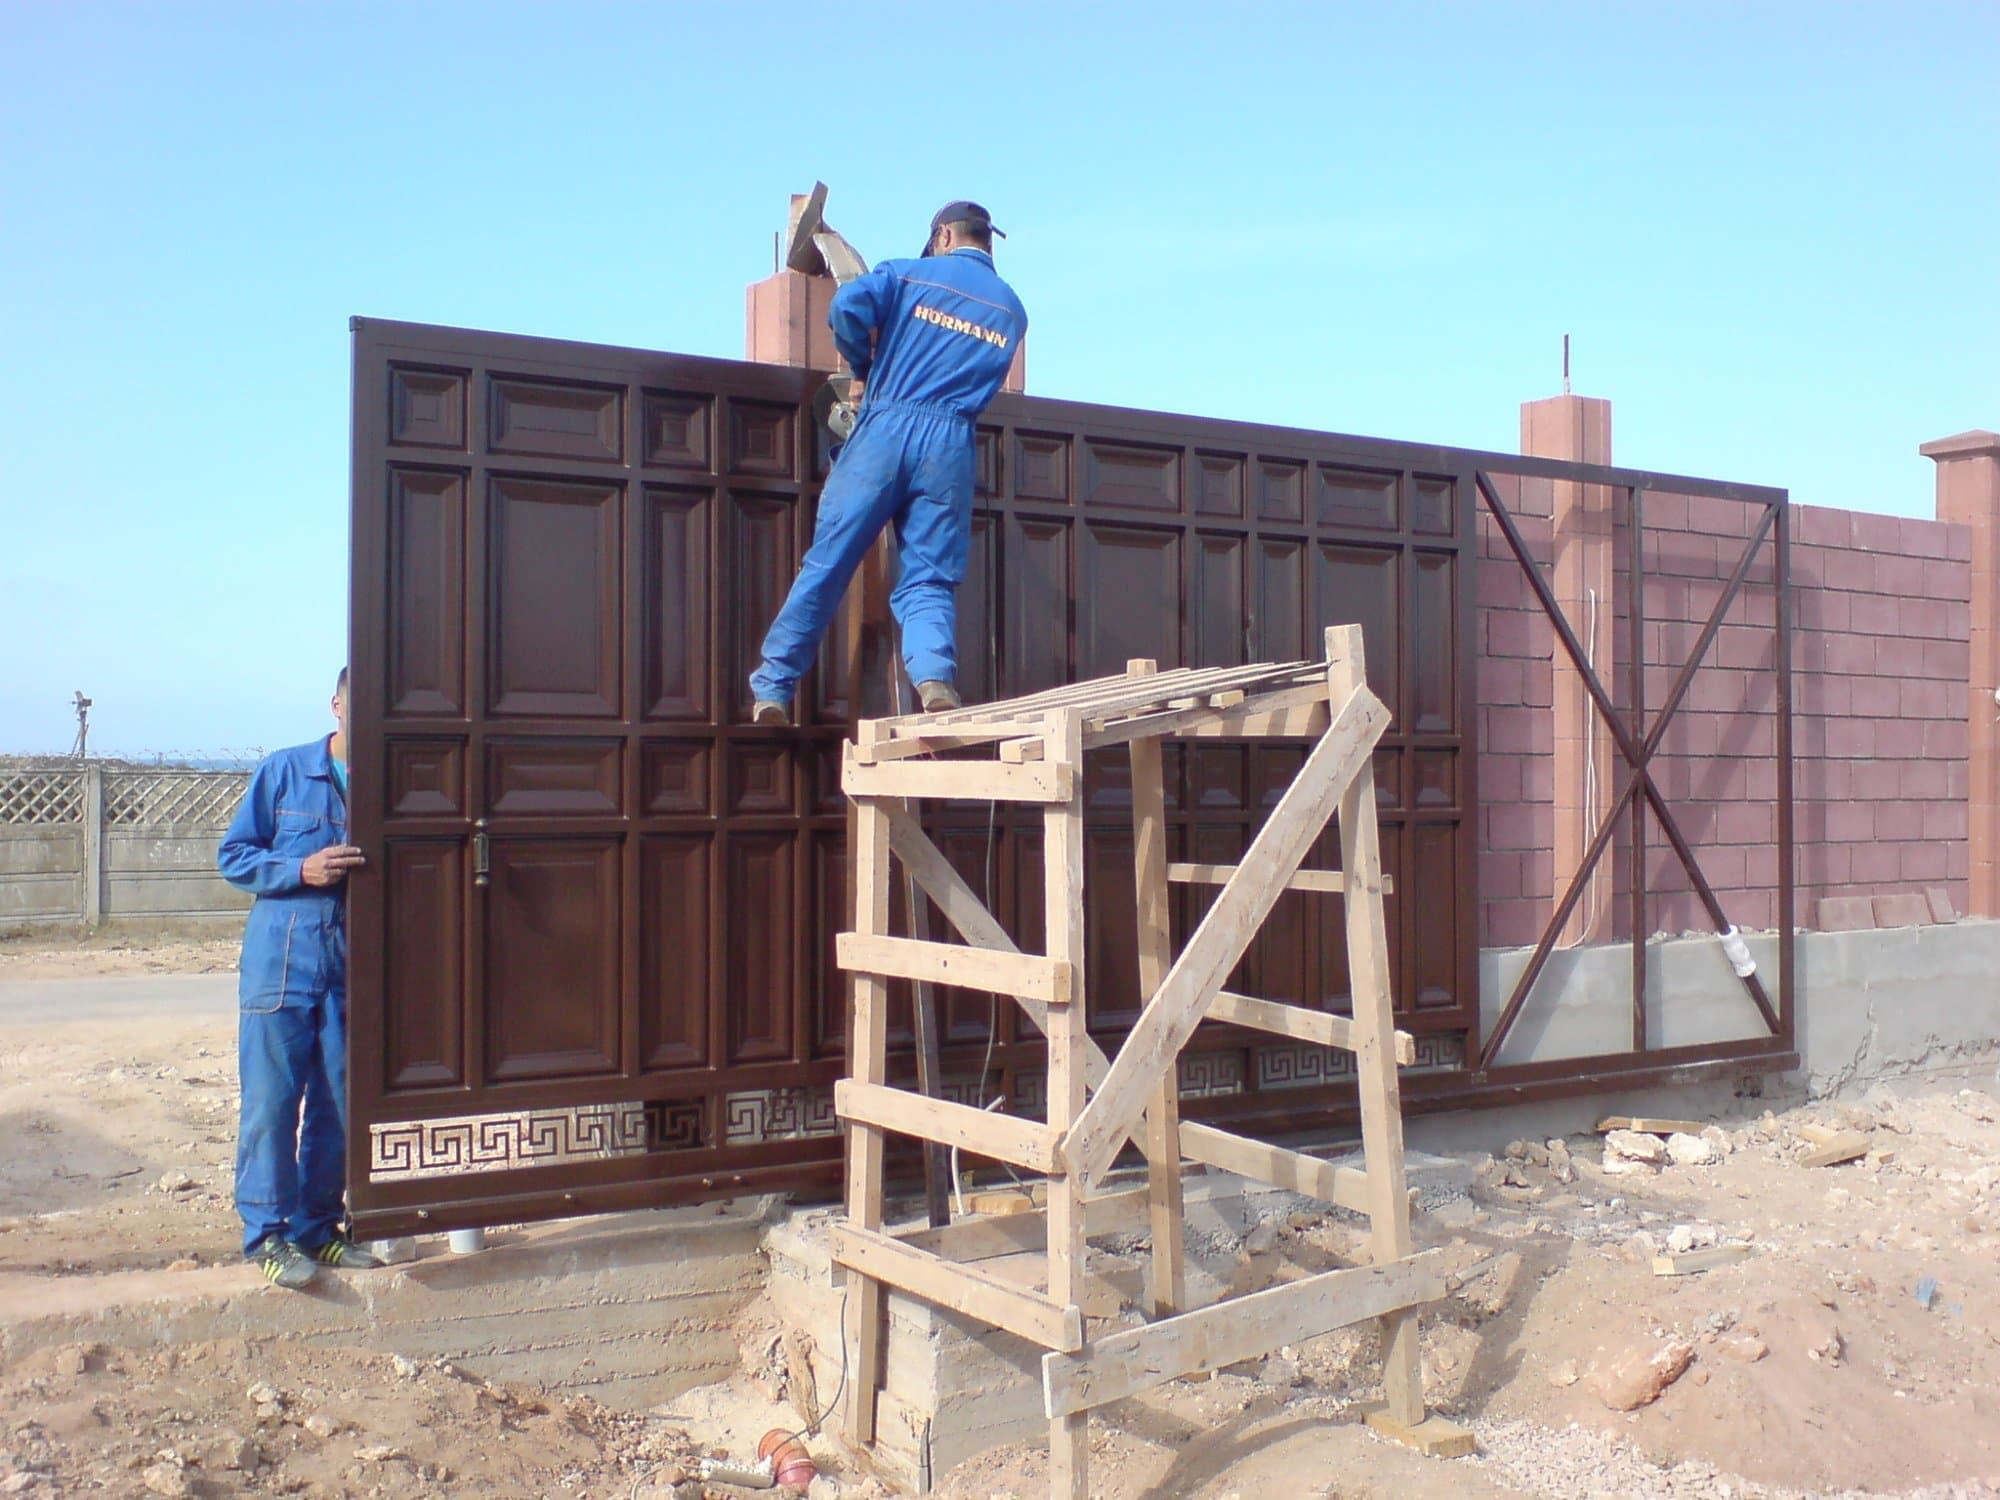 Заказать монтаж въездных ворот в Армянске командой профессионалов с опытом работы уже более 9 лет. Качественная, профессиональная, аккуратная и быстрая установка, независимо от степени сложности объекта. Цены Вас приятно удивят.